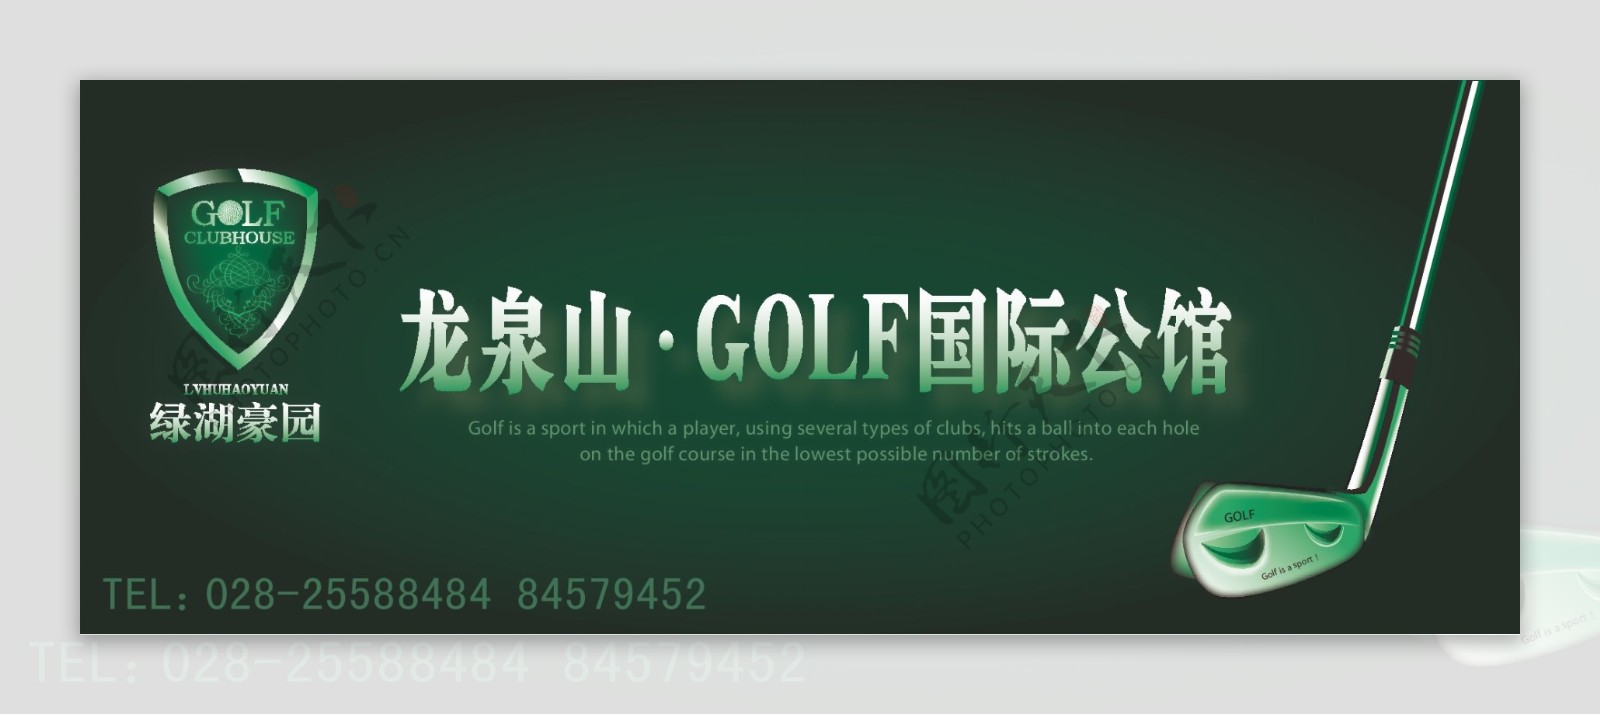 高尔夫俱乐部横式灯箱广告设计